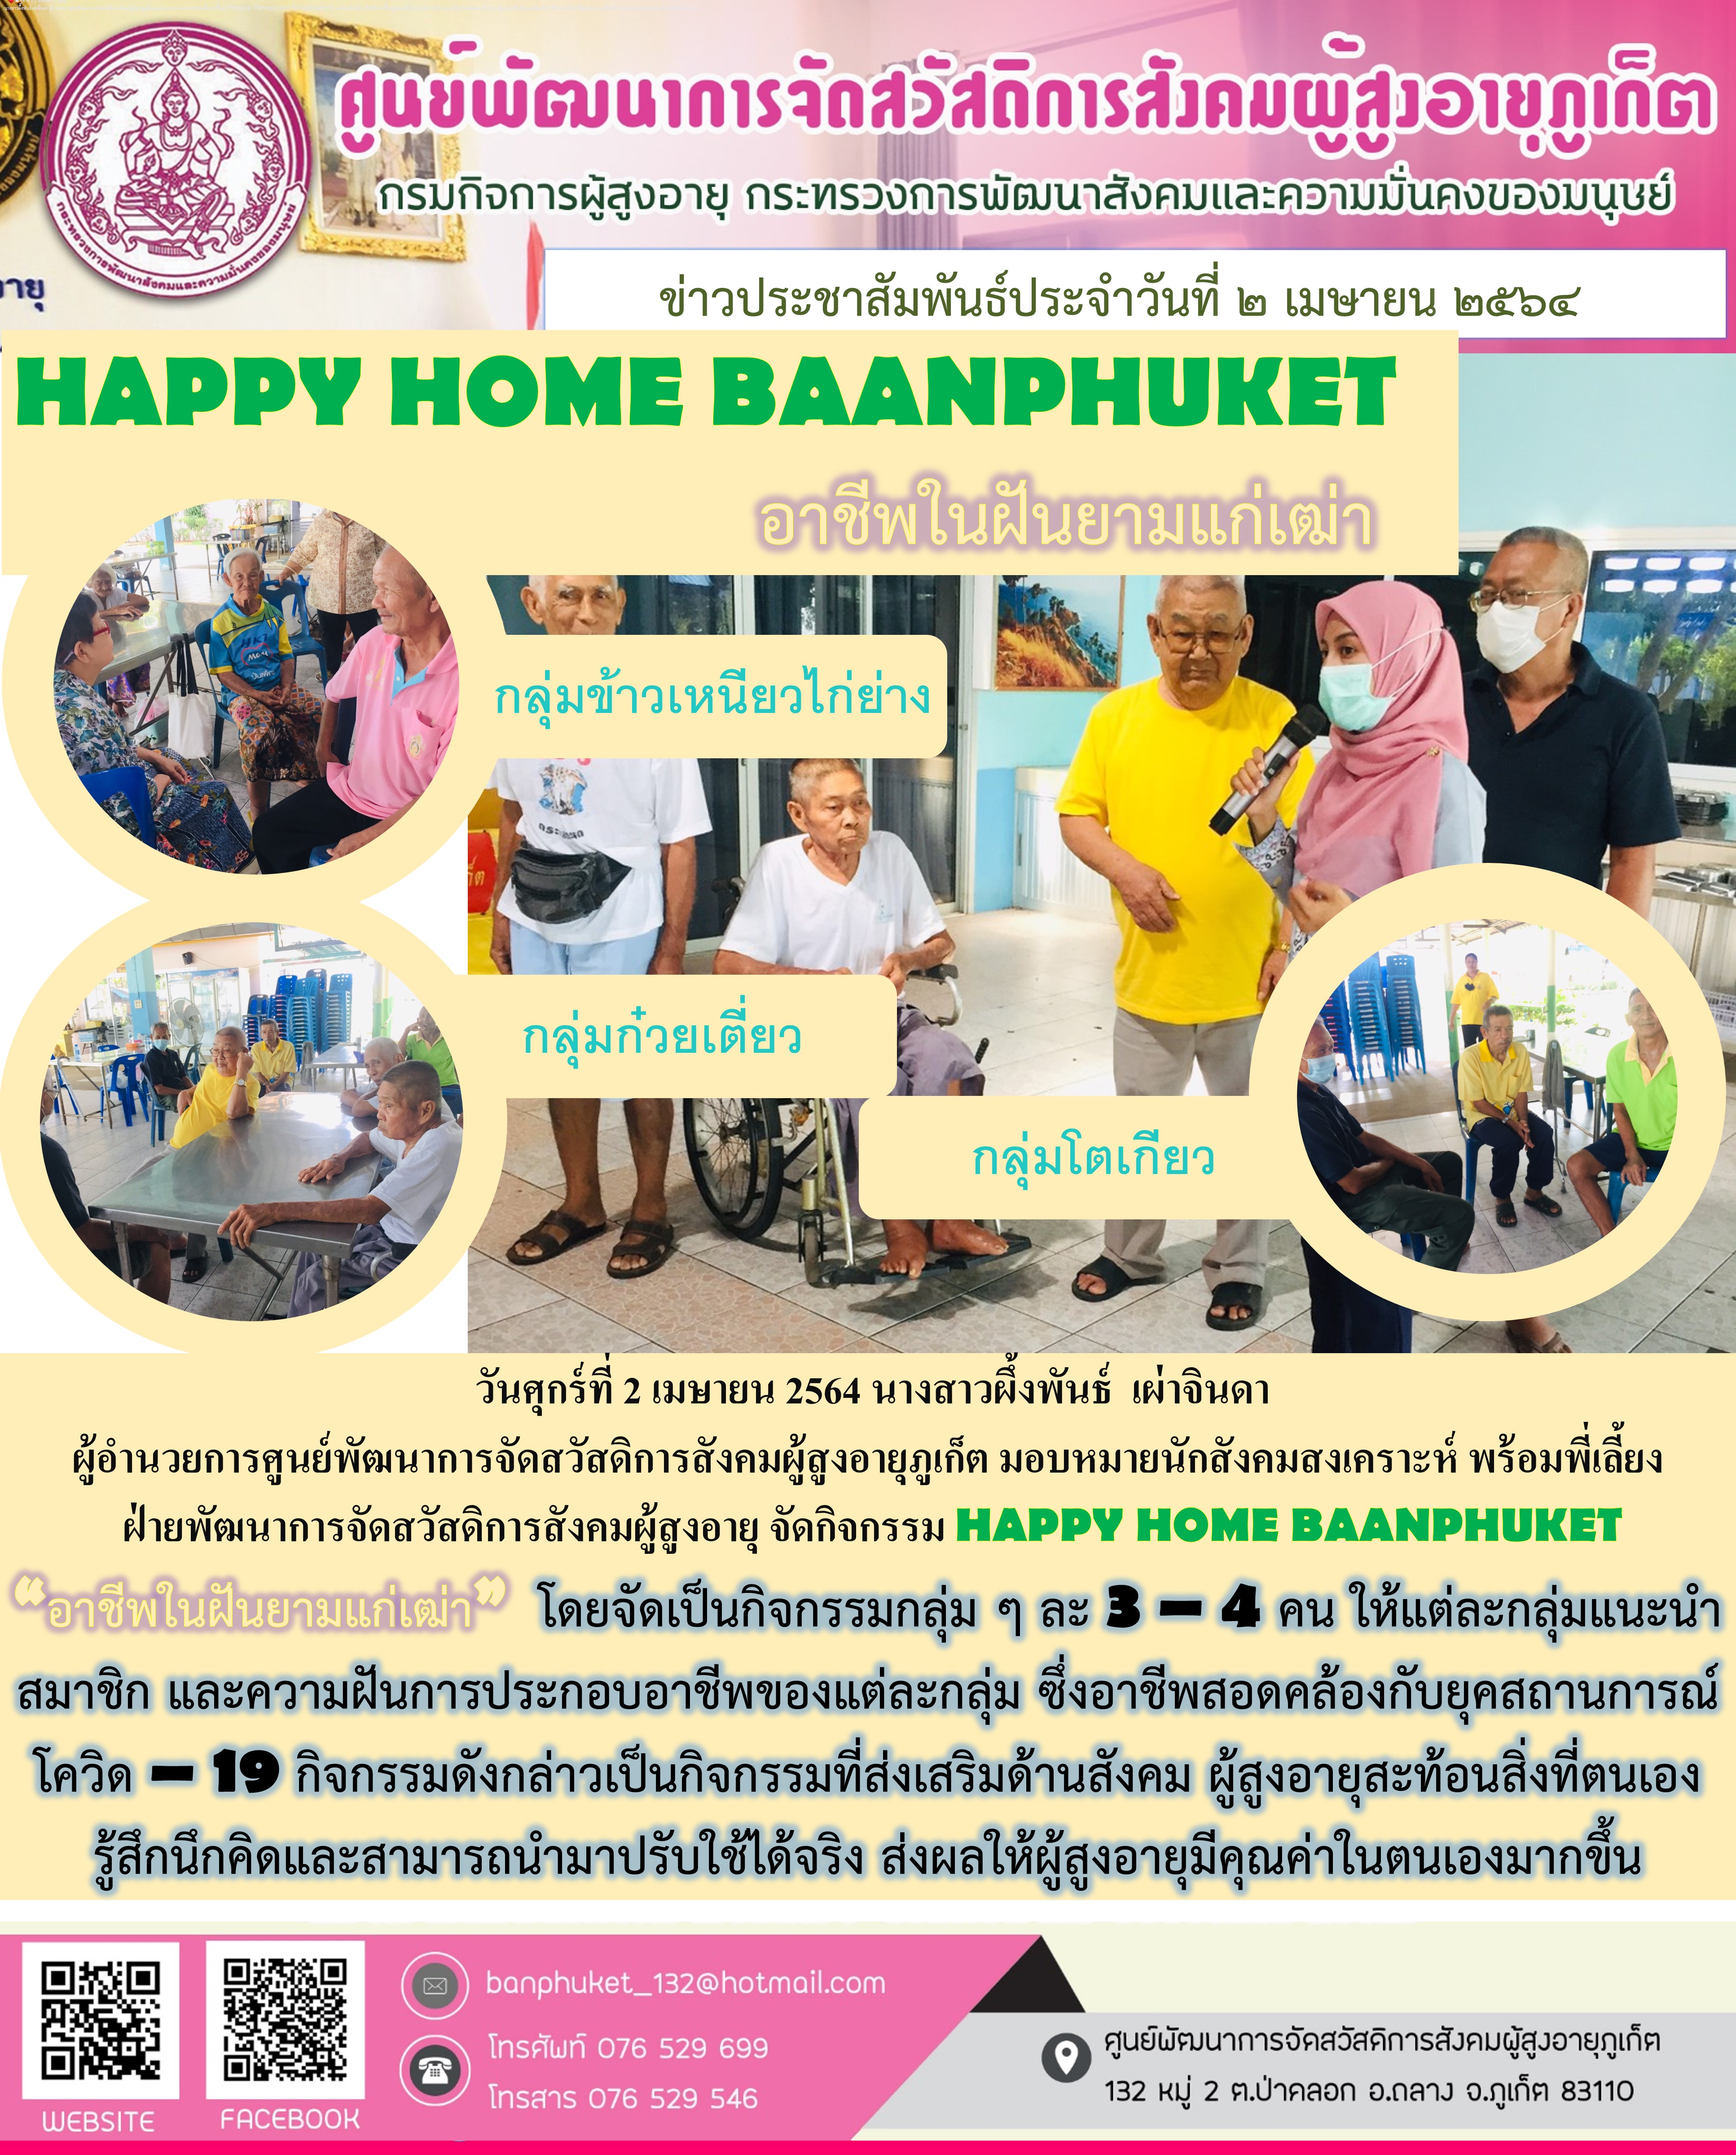 กิจกรรม Happy Home Baanpluket  ตอน อาชีพในฝันยามแก่เฒ่า 